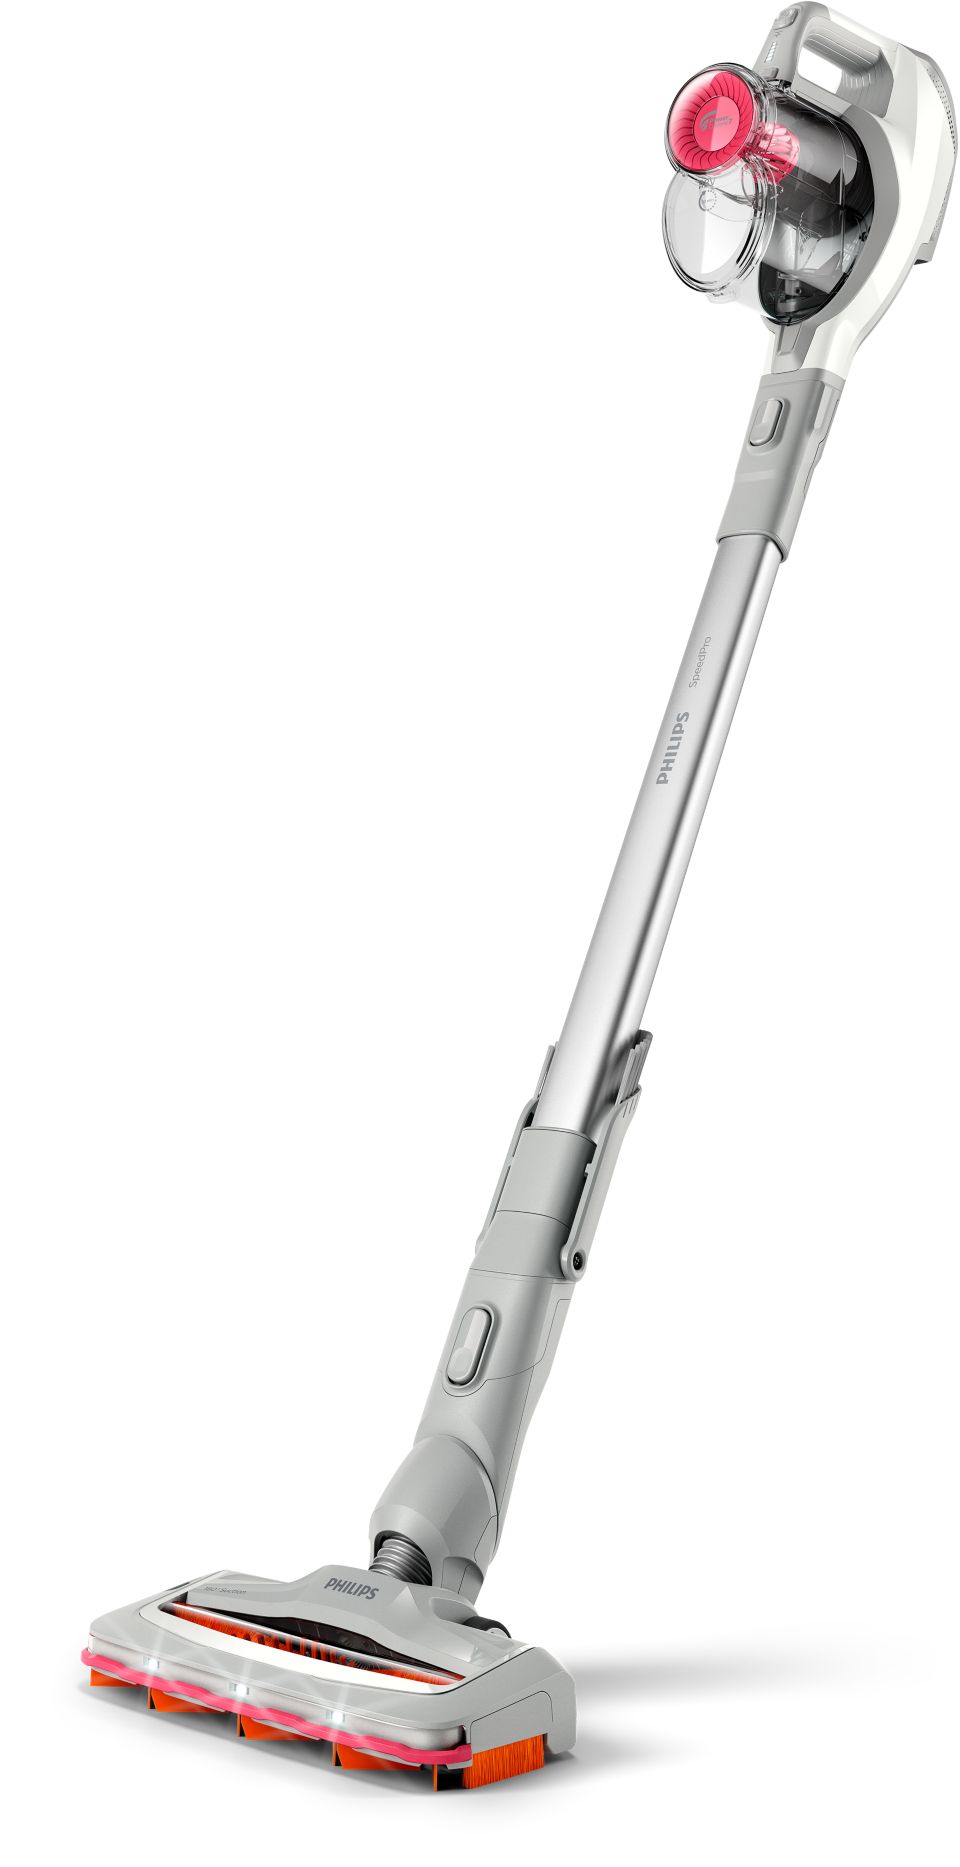 Philips Cepillo de aspiración 180° Aspiradora vertical sin cable